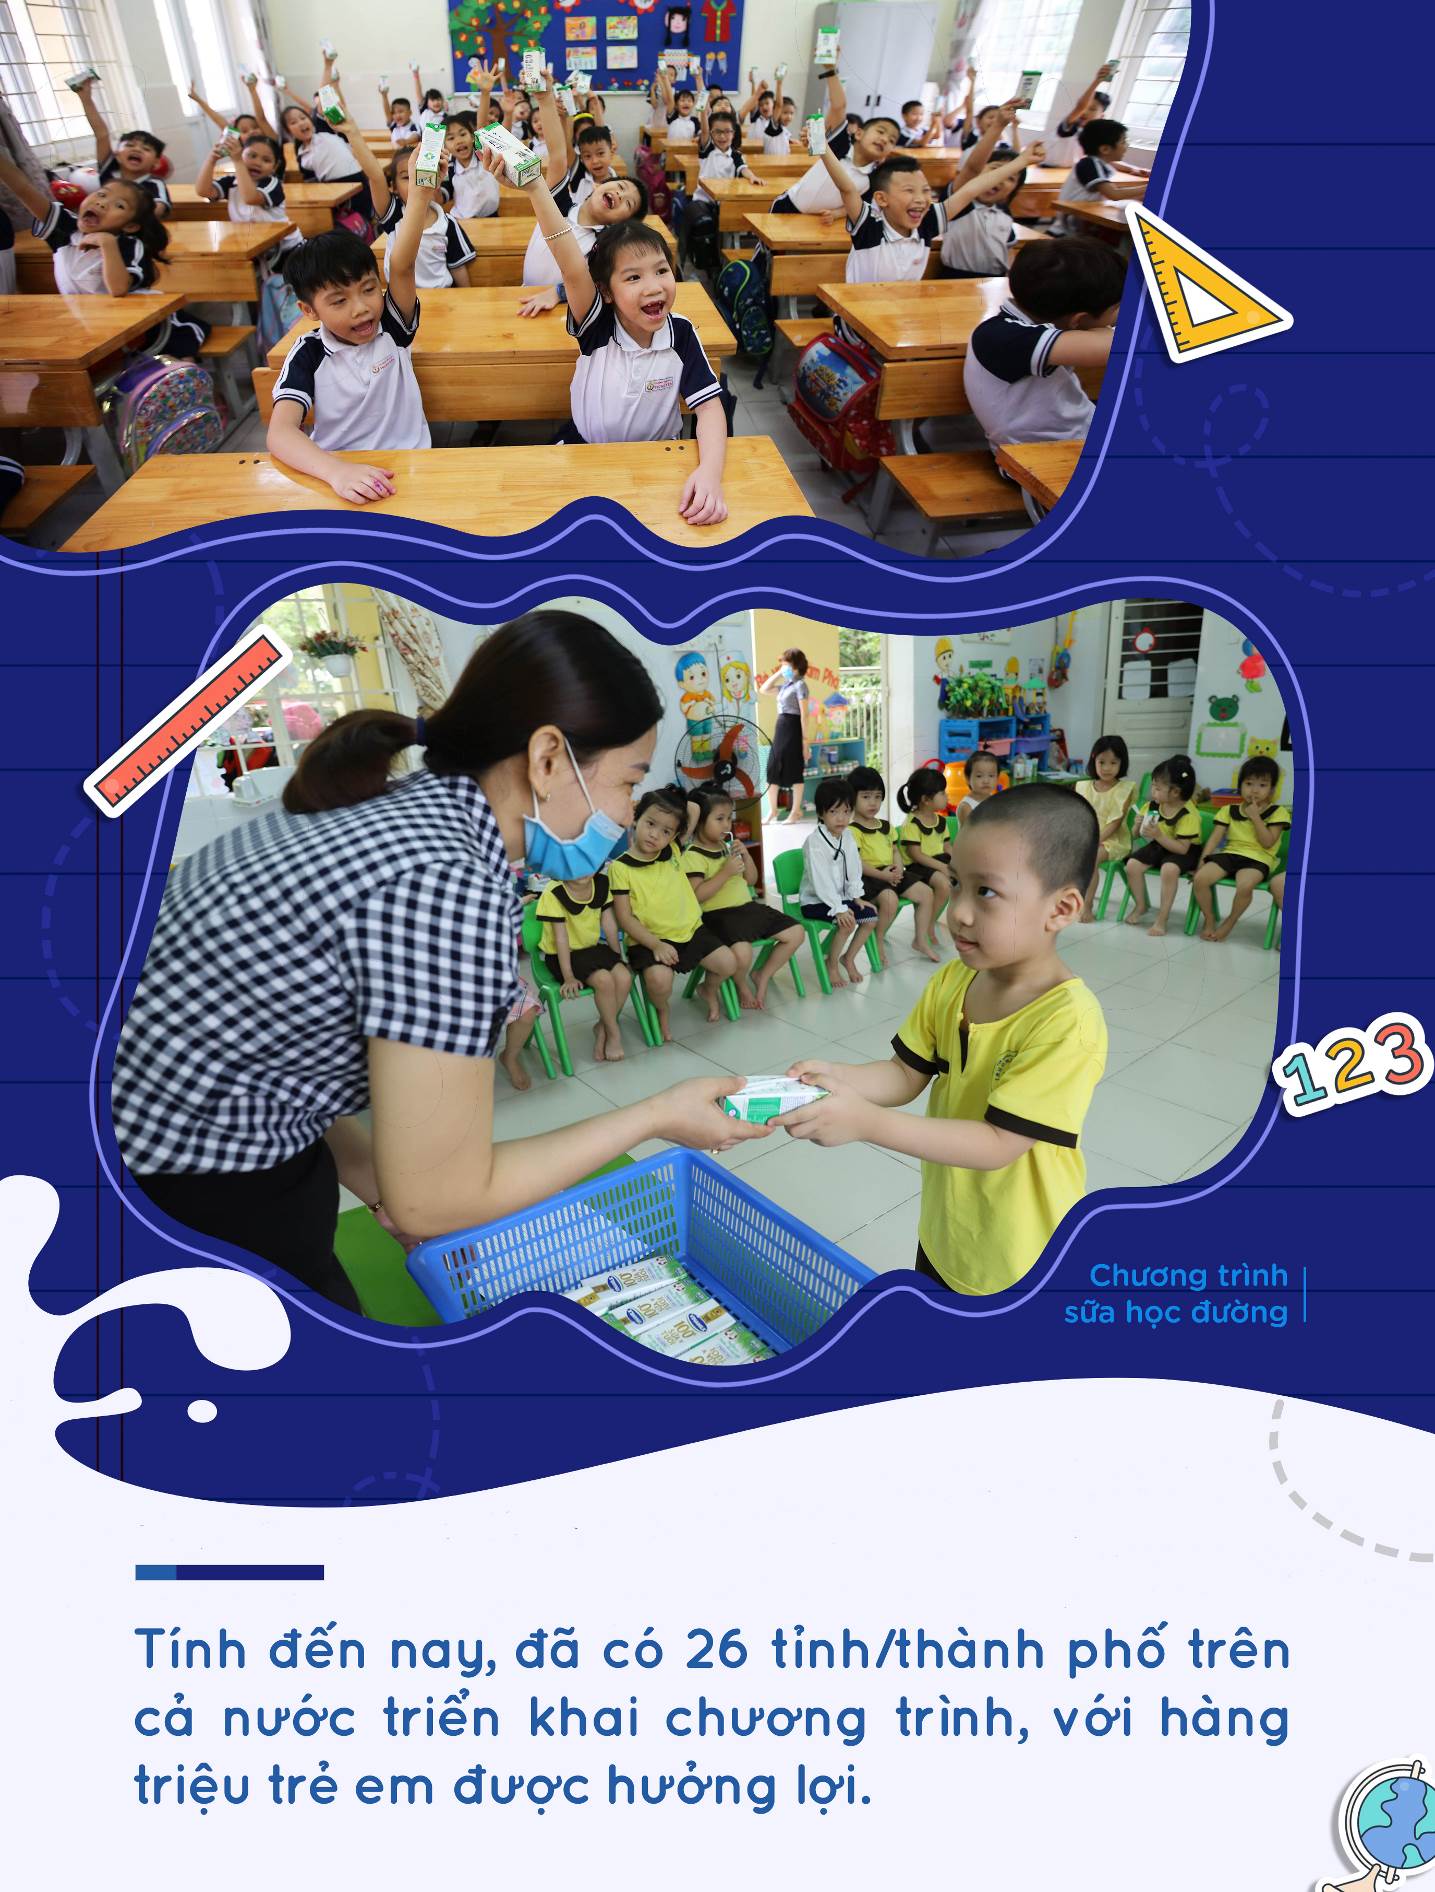 Những nỗ lực trong chăm sóc dinh dưỡng cho học sinh với Sữa học đường - Ảnh 2.